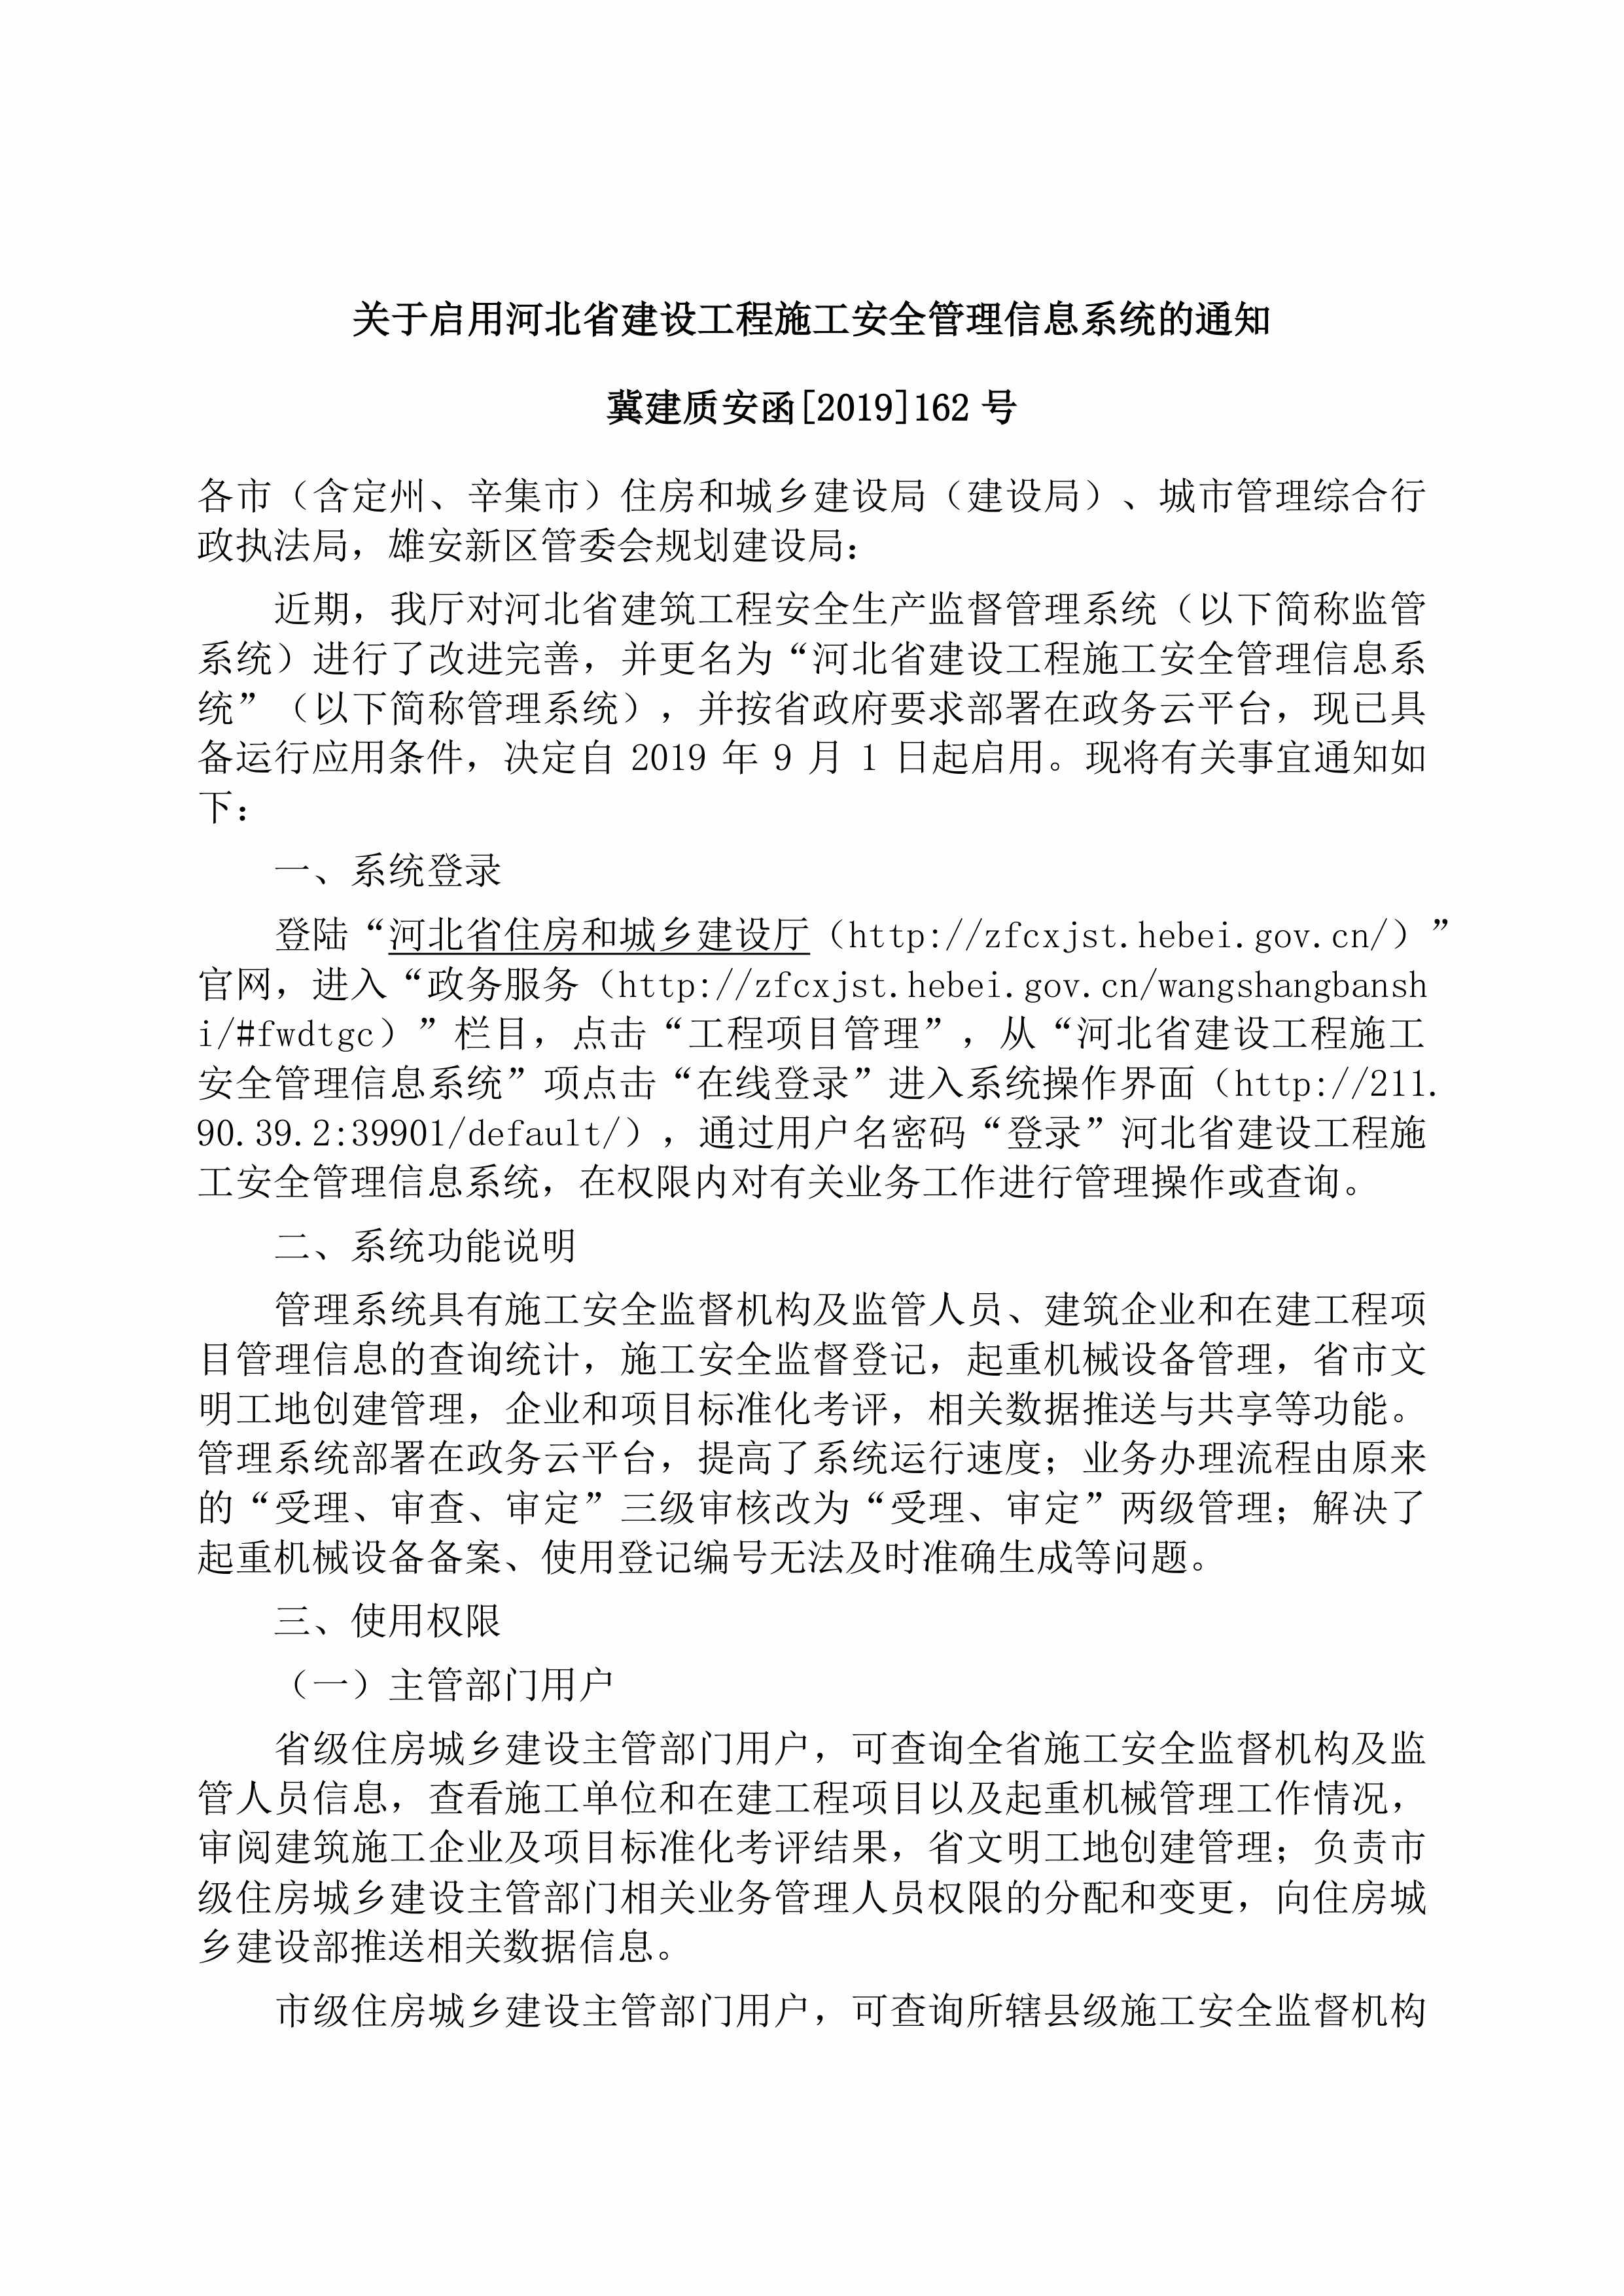 冀建质安函[2019]162号：关于启用河北省建设工程施工安全管理信息系统的通知